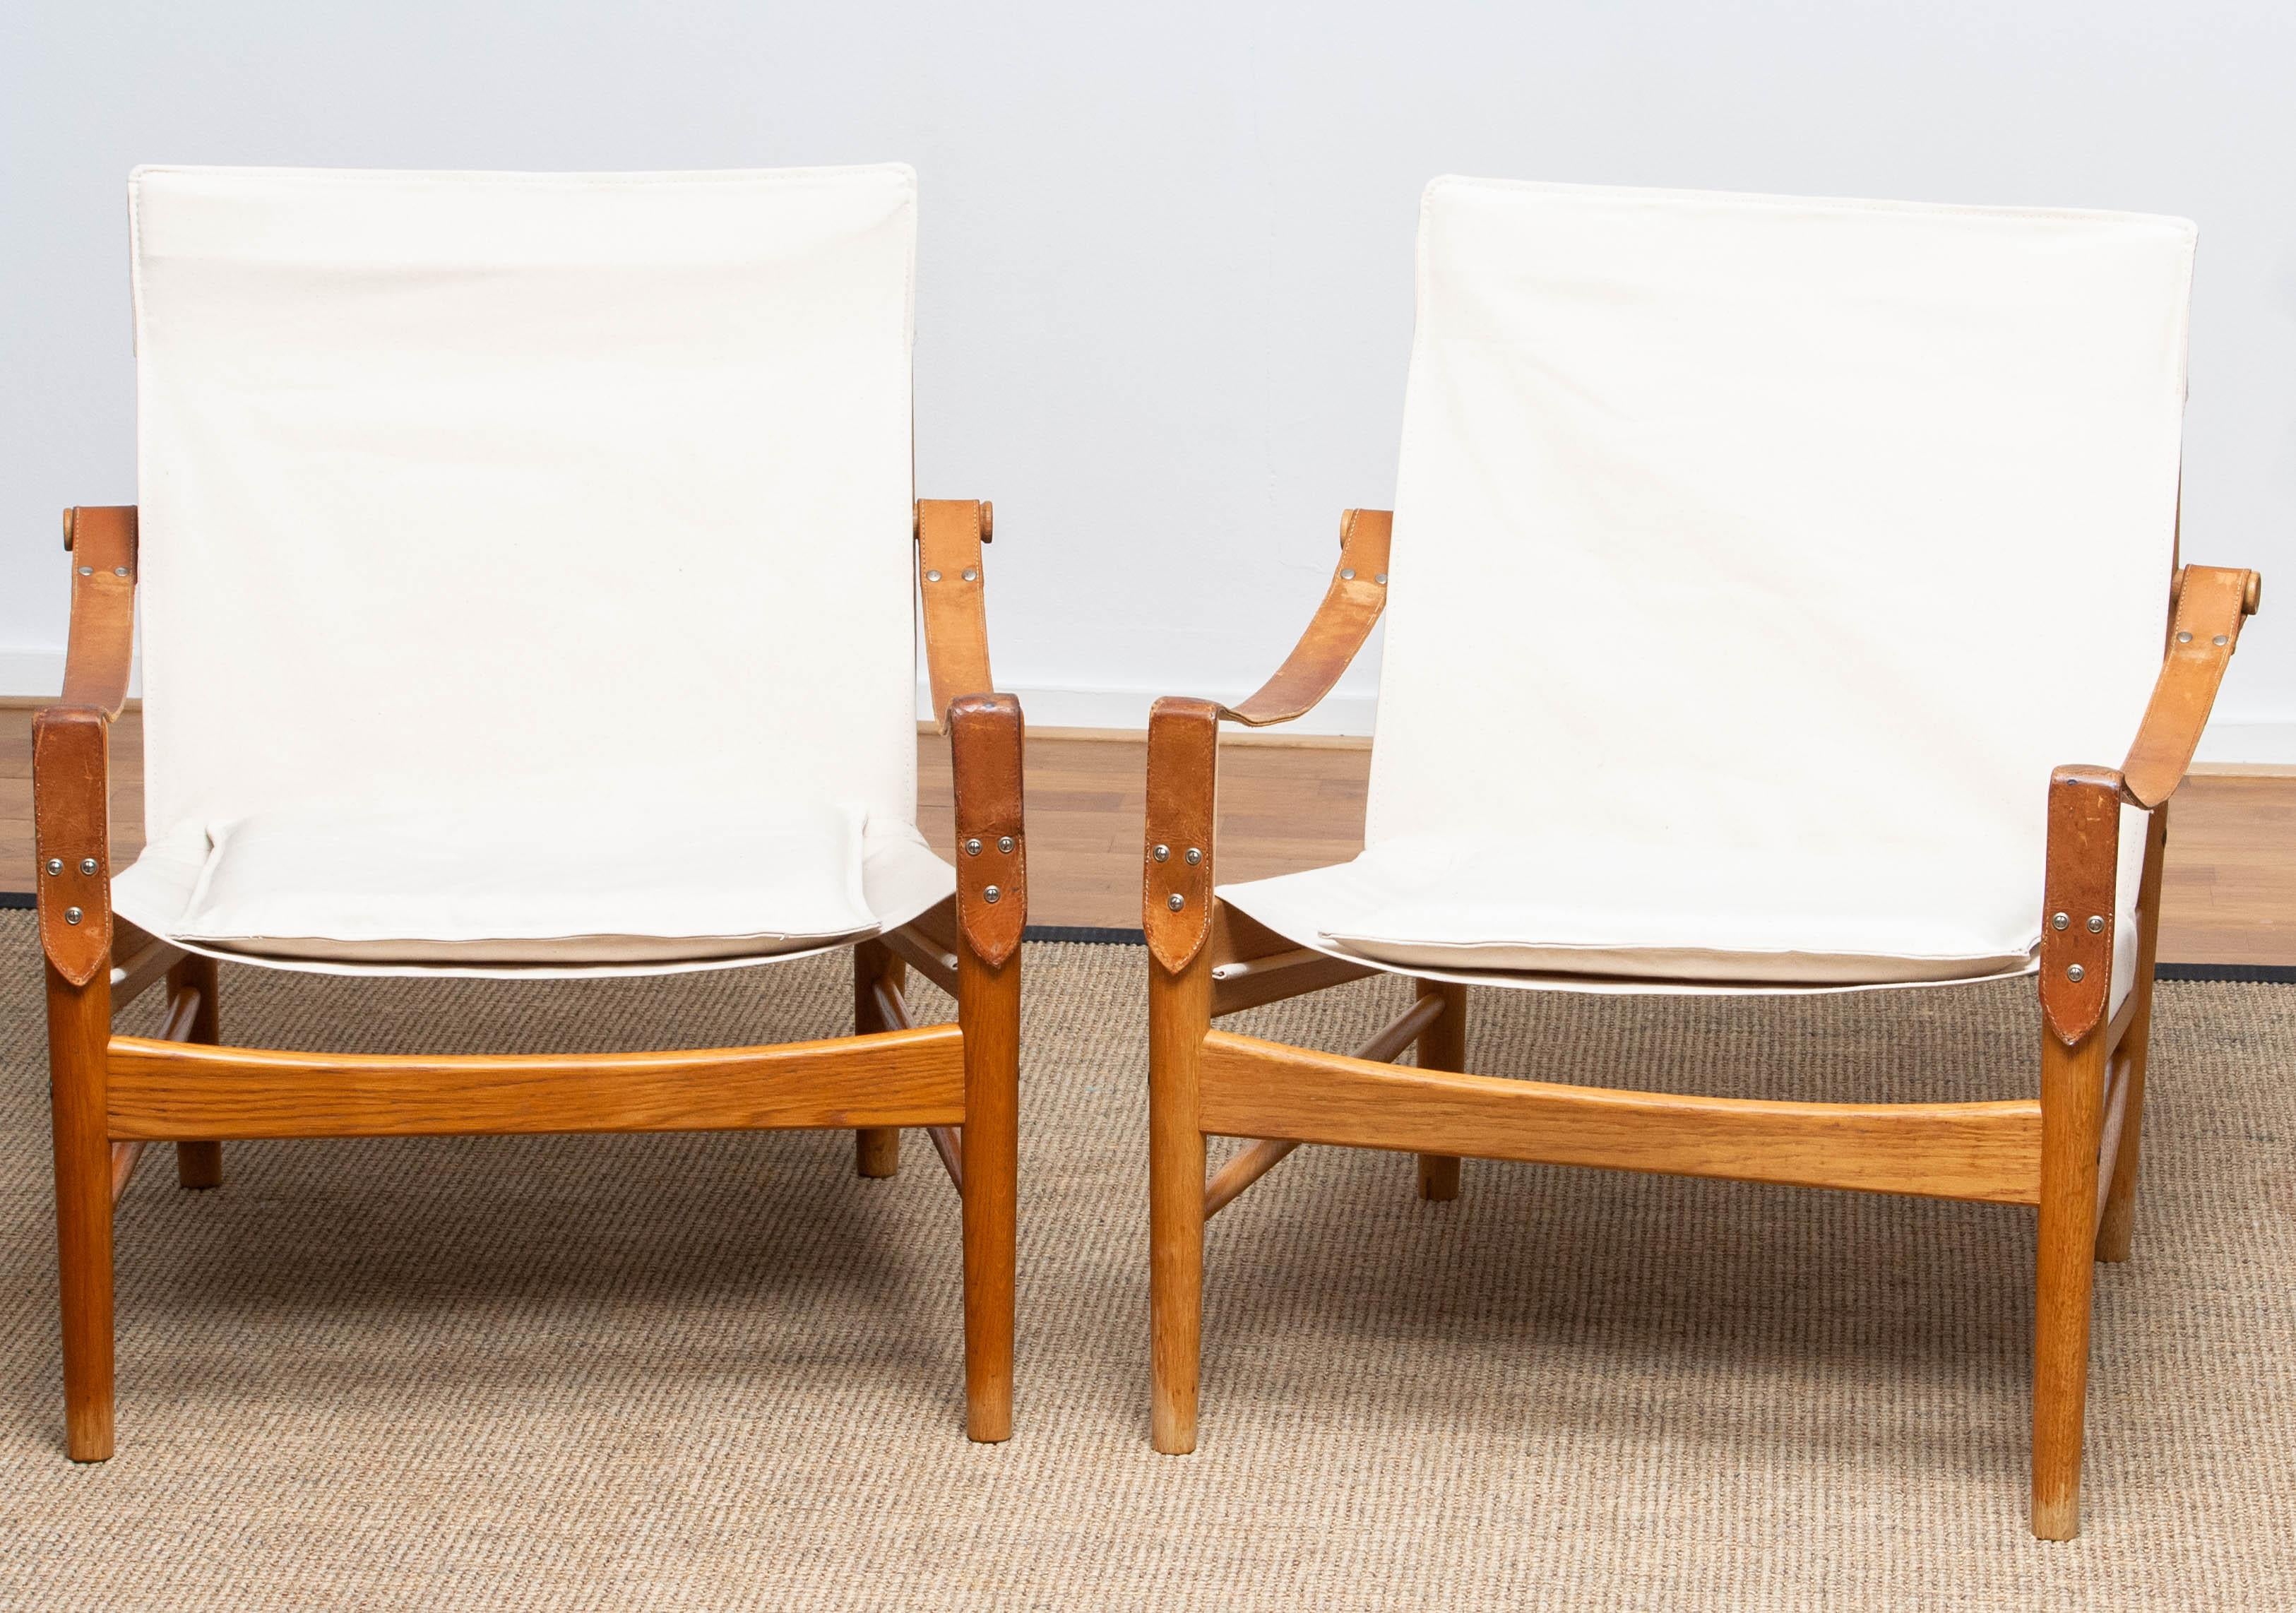 Ein schönes Paar Safaristühle, entworfen von Hans Olsen für Viska Möbler in Kinna, Schweden.
Diese Stühle sind aus Eichenholz gefertigt und mit einer neuen Polsterung aus Segeltuch versehen.
Sie sind in einem wunderbaren Zustand und